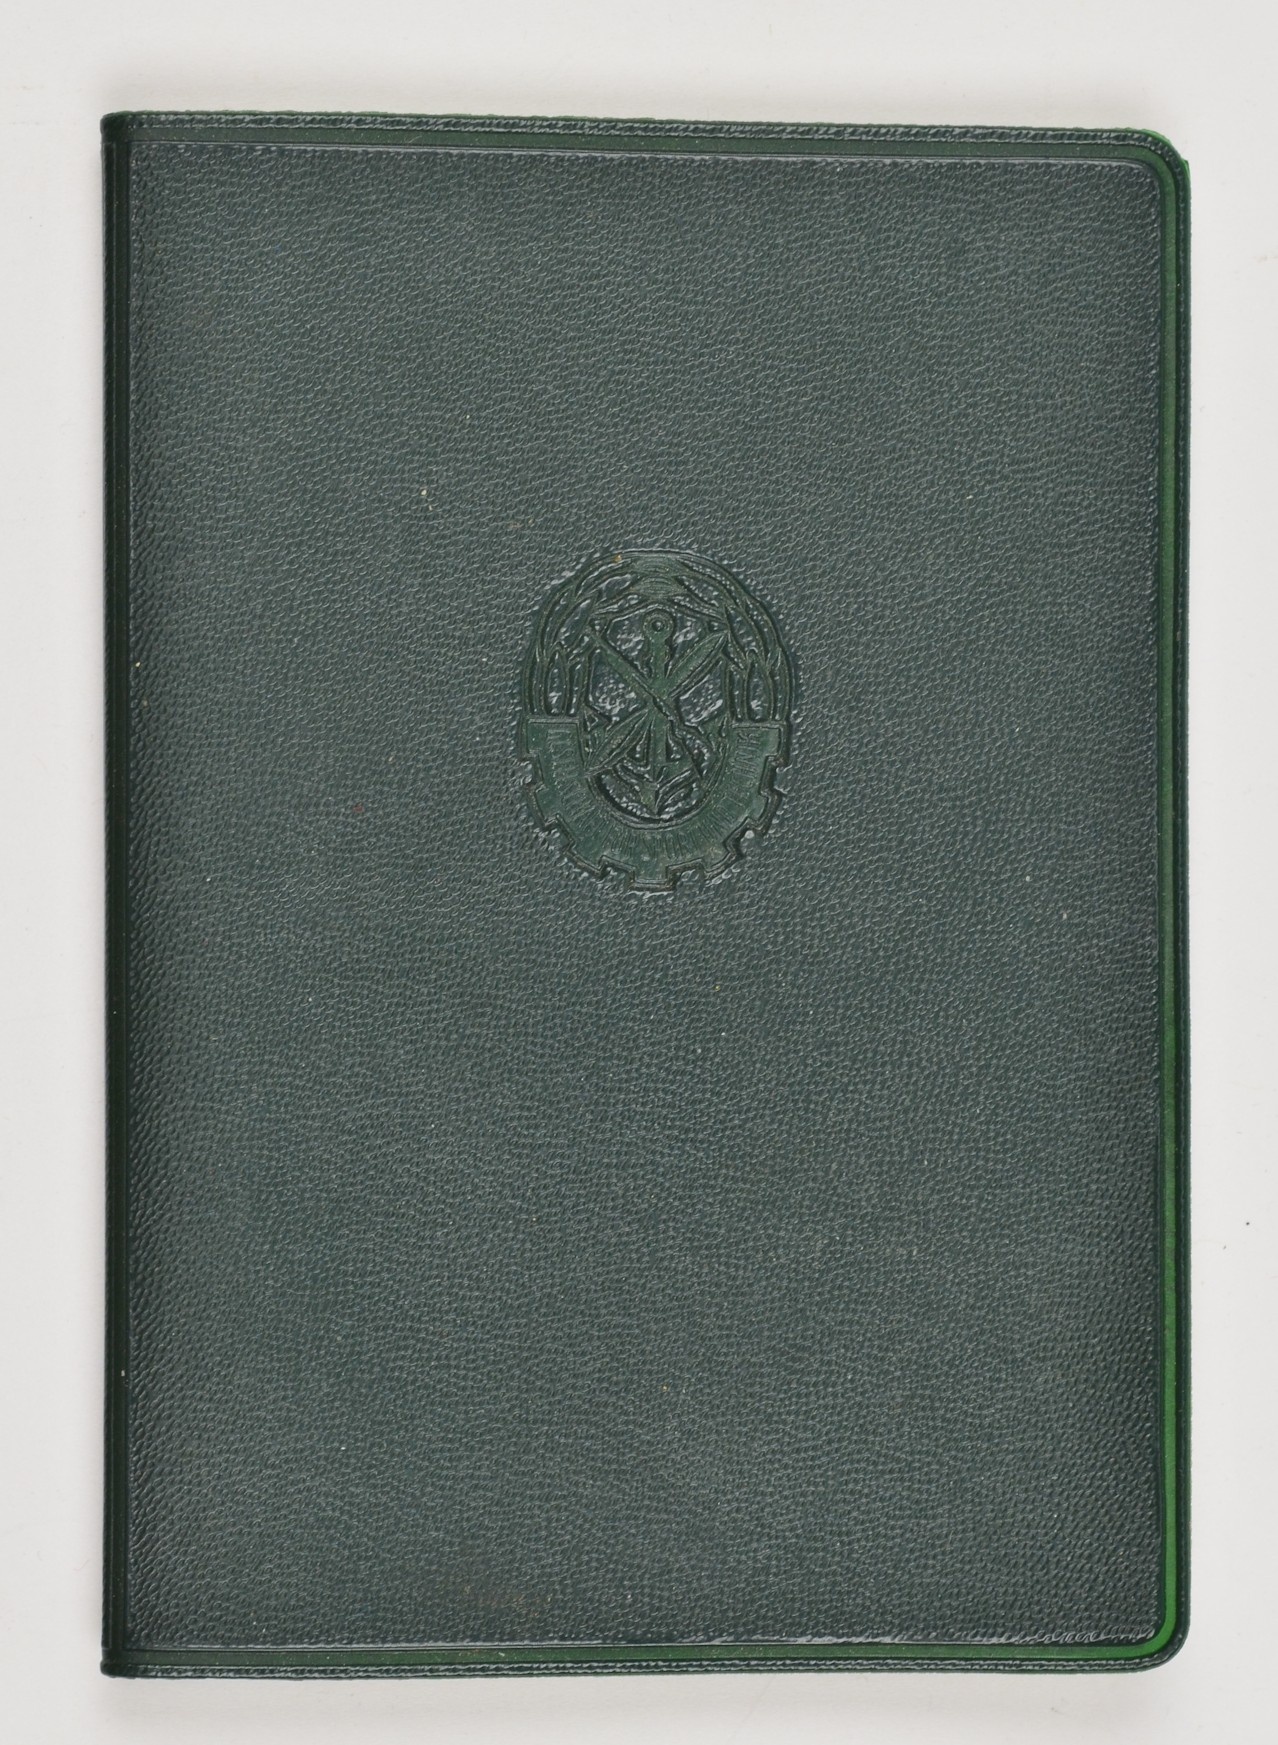 GST-Mitgliedsbuch von Fred Knauth, Weißenfels 1.3.1963 (Museum Weißenfels - Schloss Neu-Augustusburg CC BY-NC-SA)